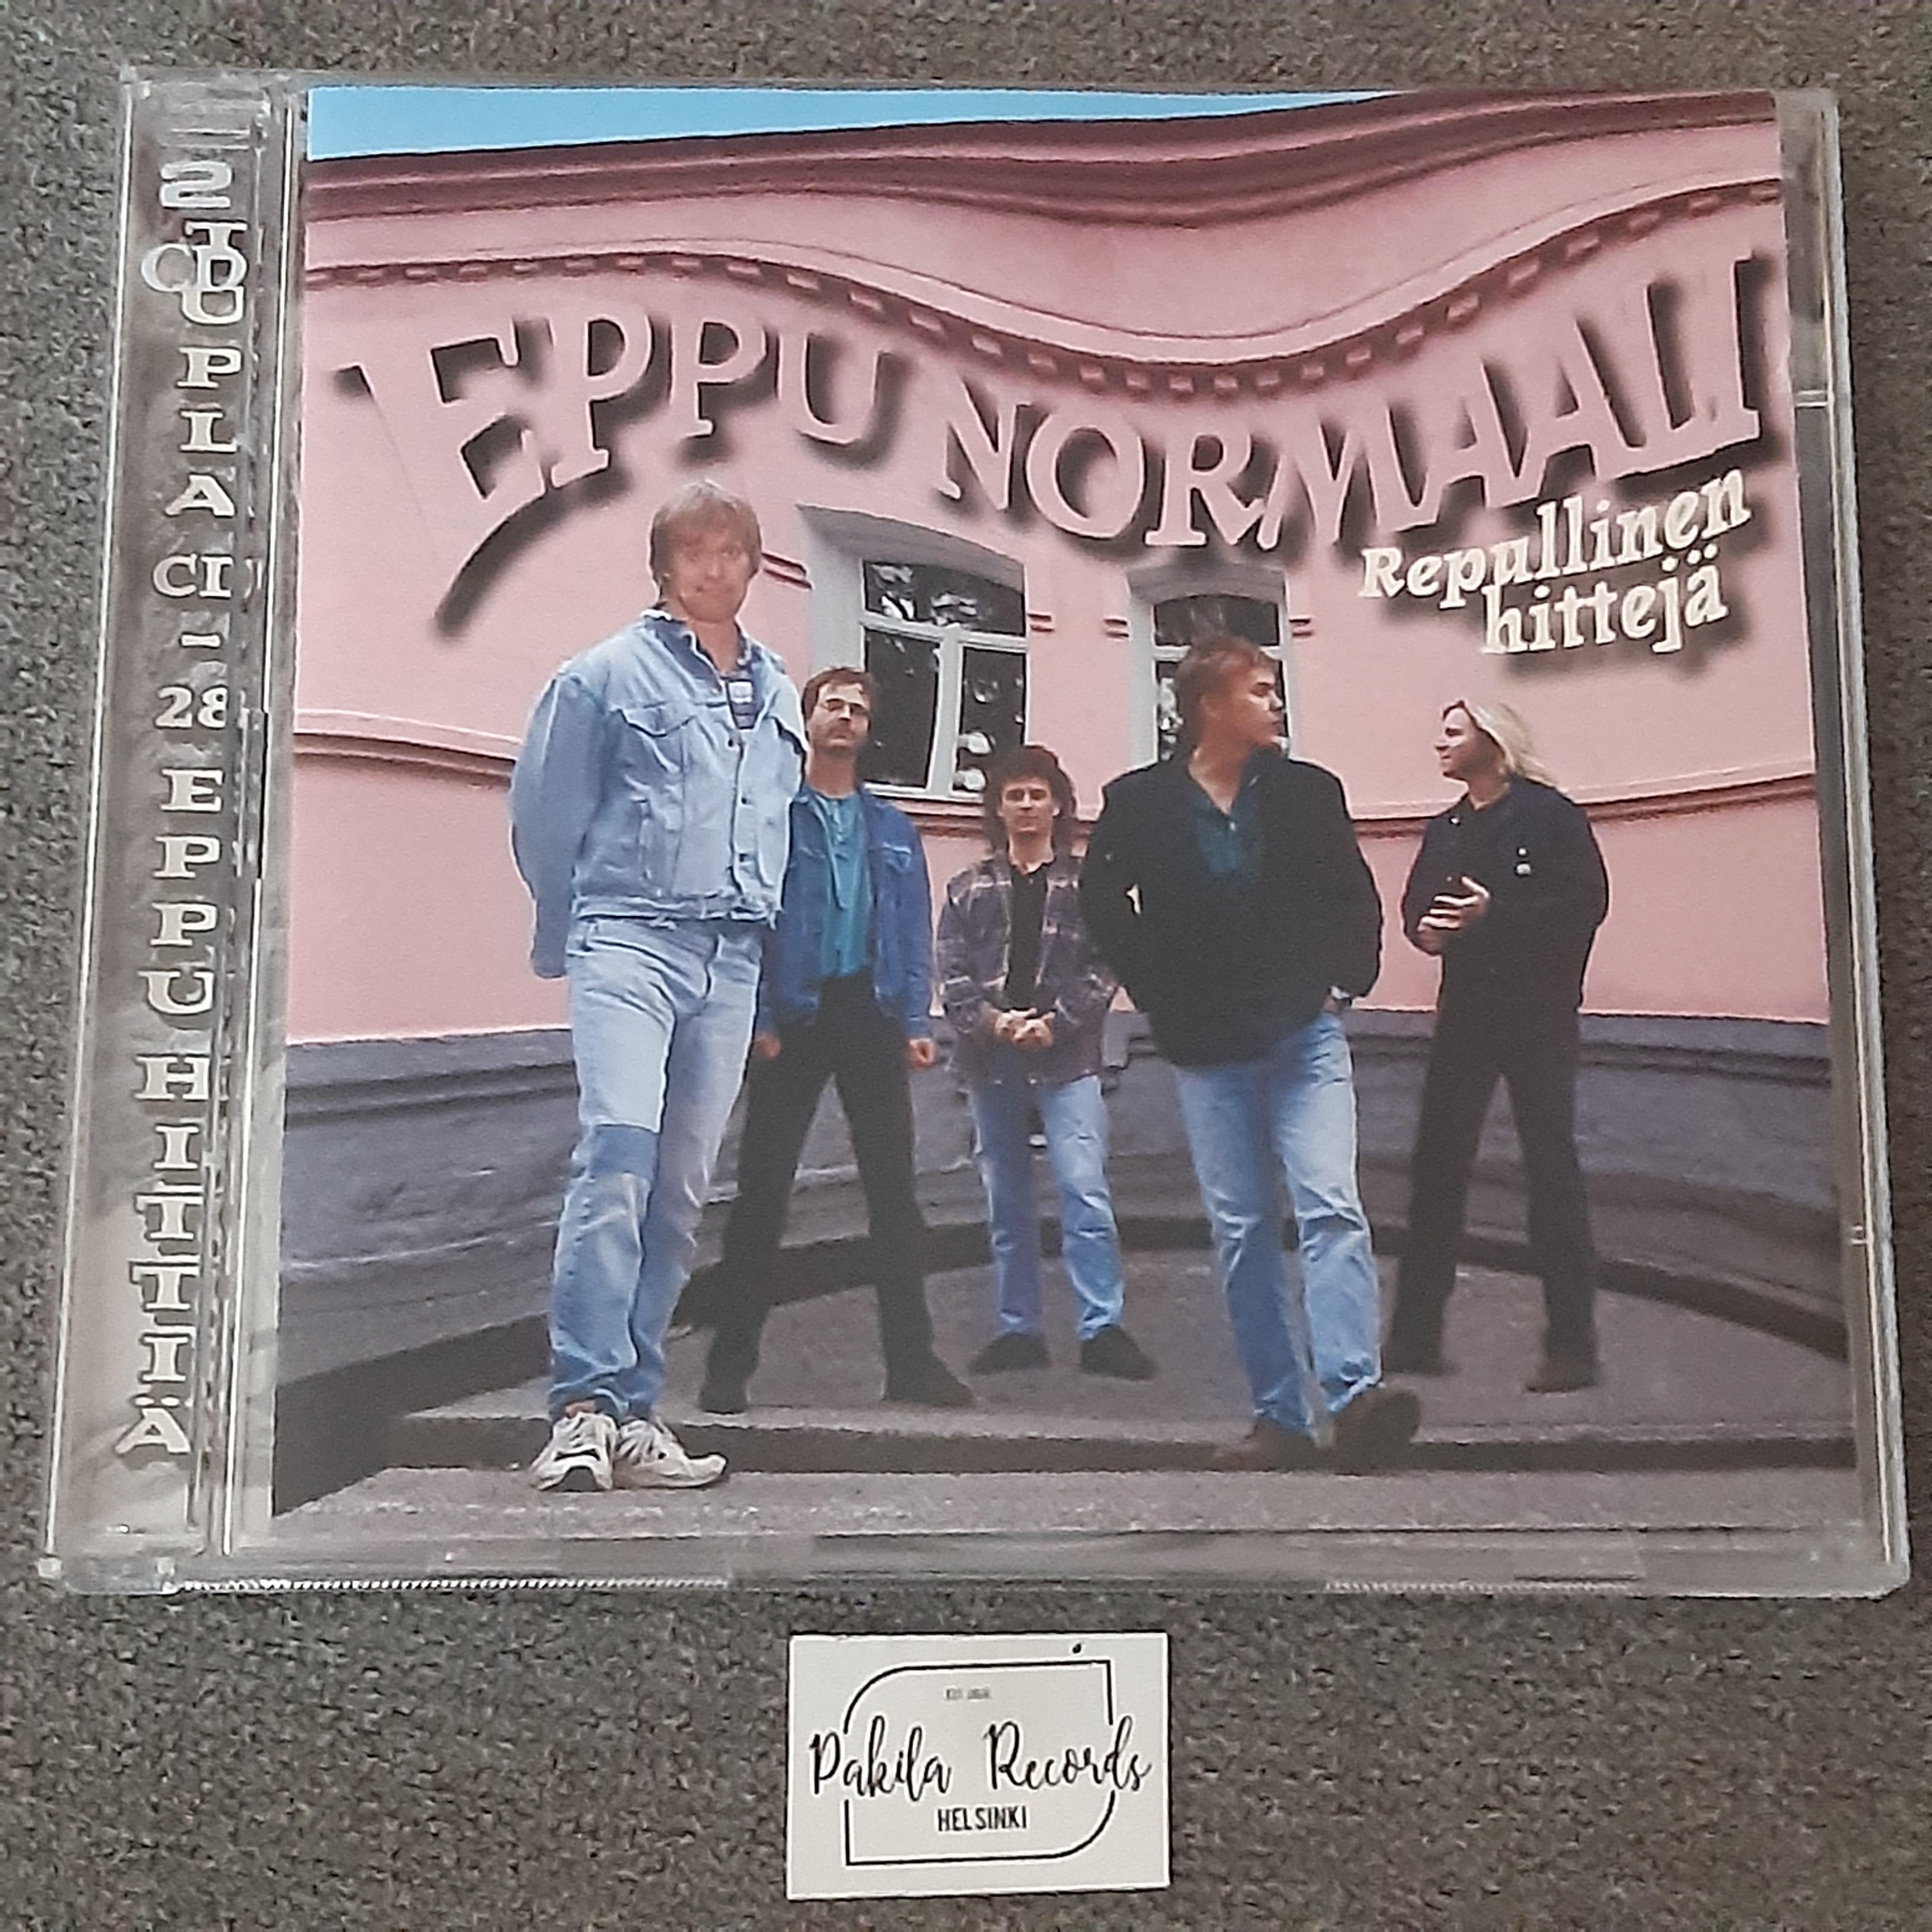 Eppu Normaali - Repullinen hittejä - 2 CD (käytetty)